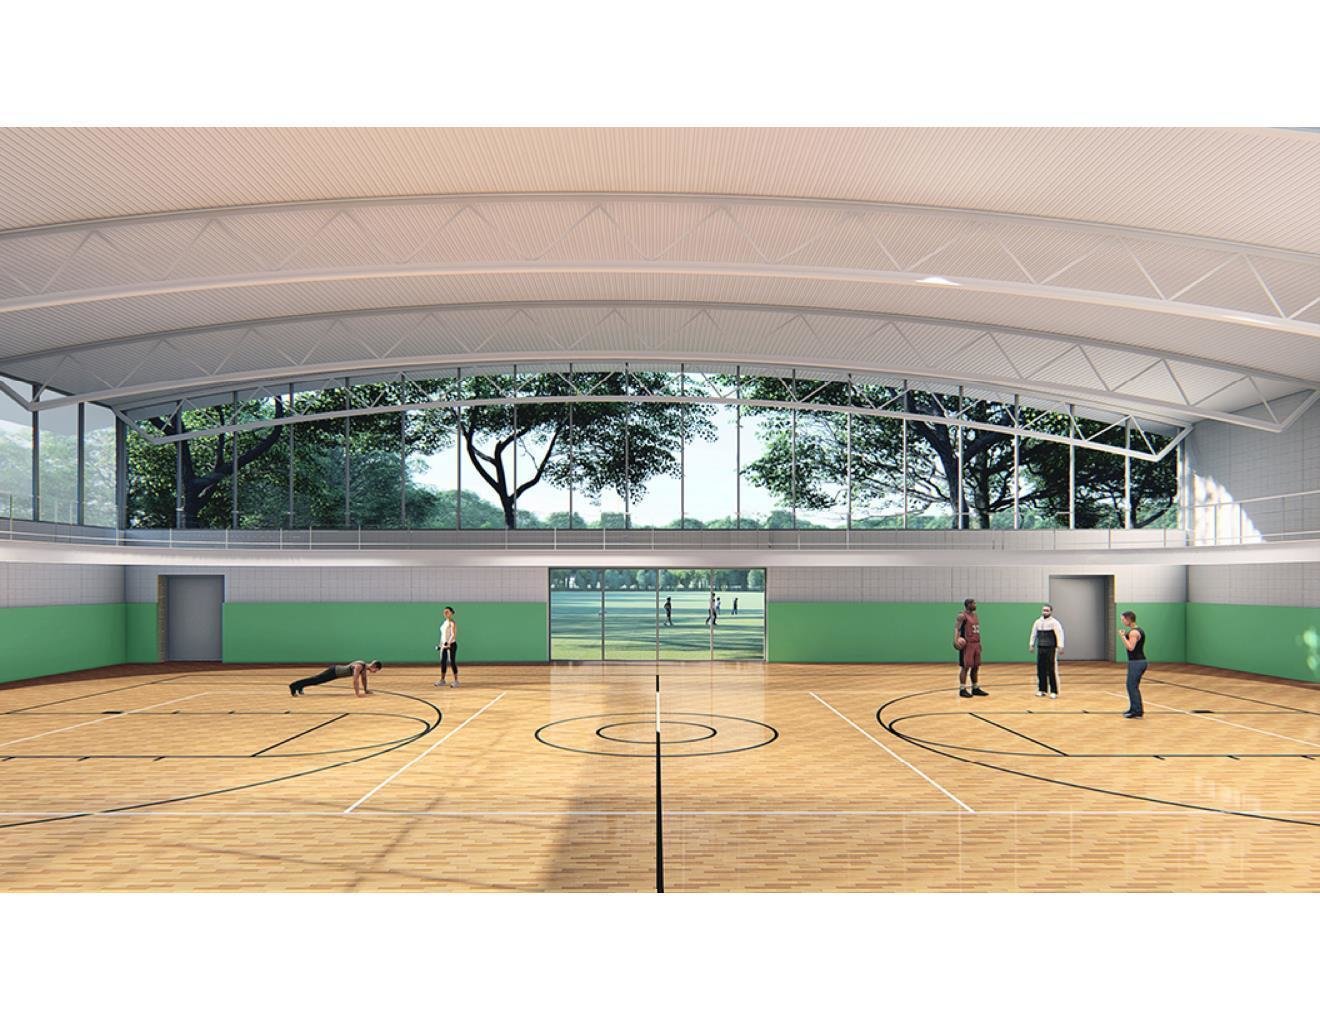 04 tskp eastern greenwich civic center rendering interior gymnasium 1400 xxx q85